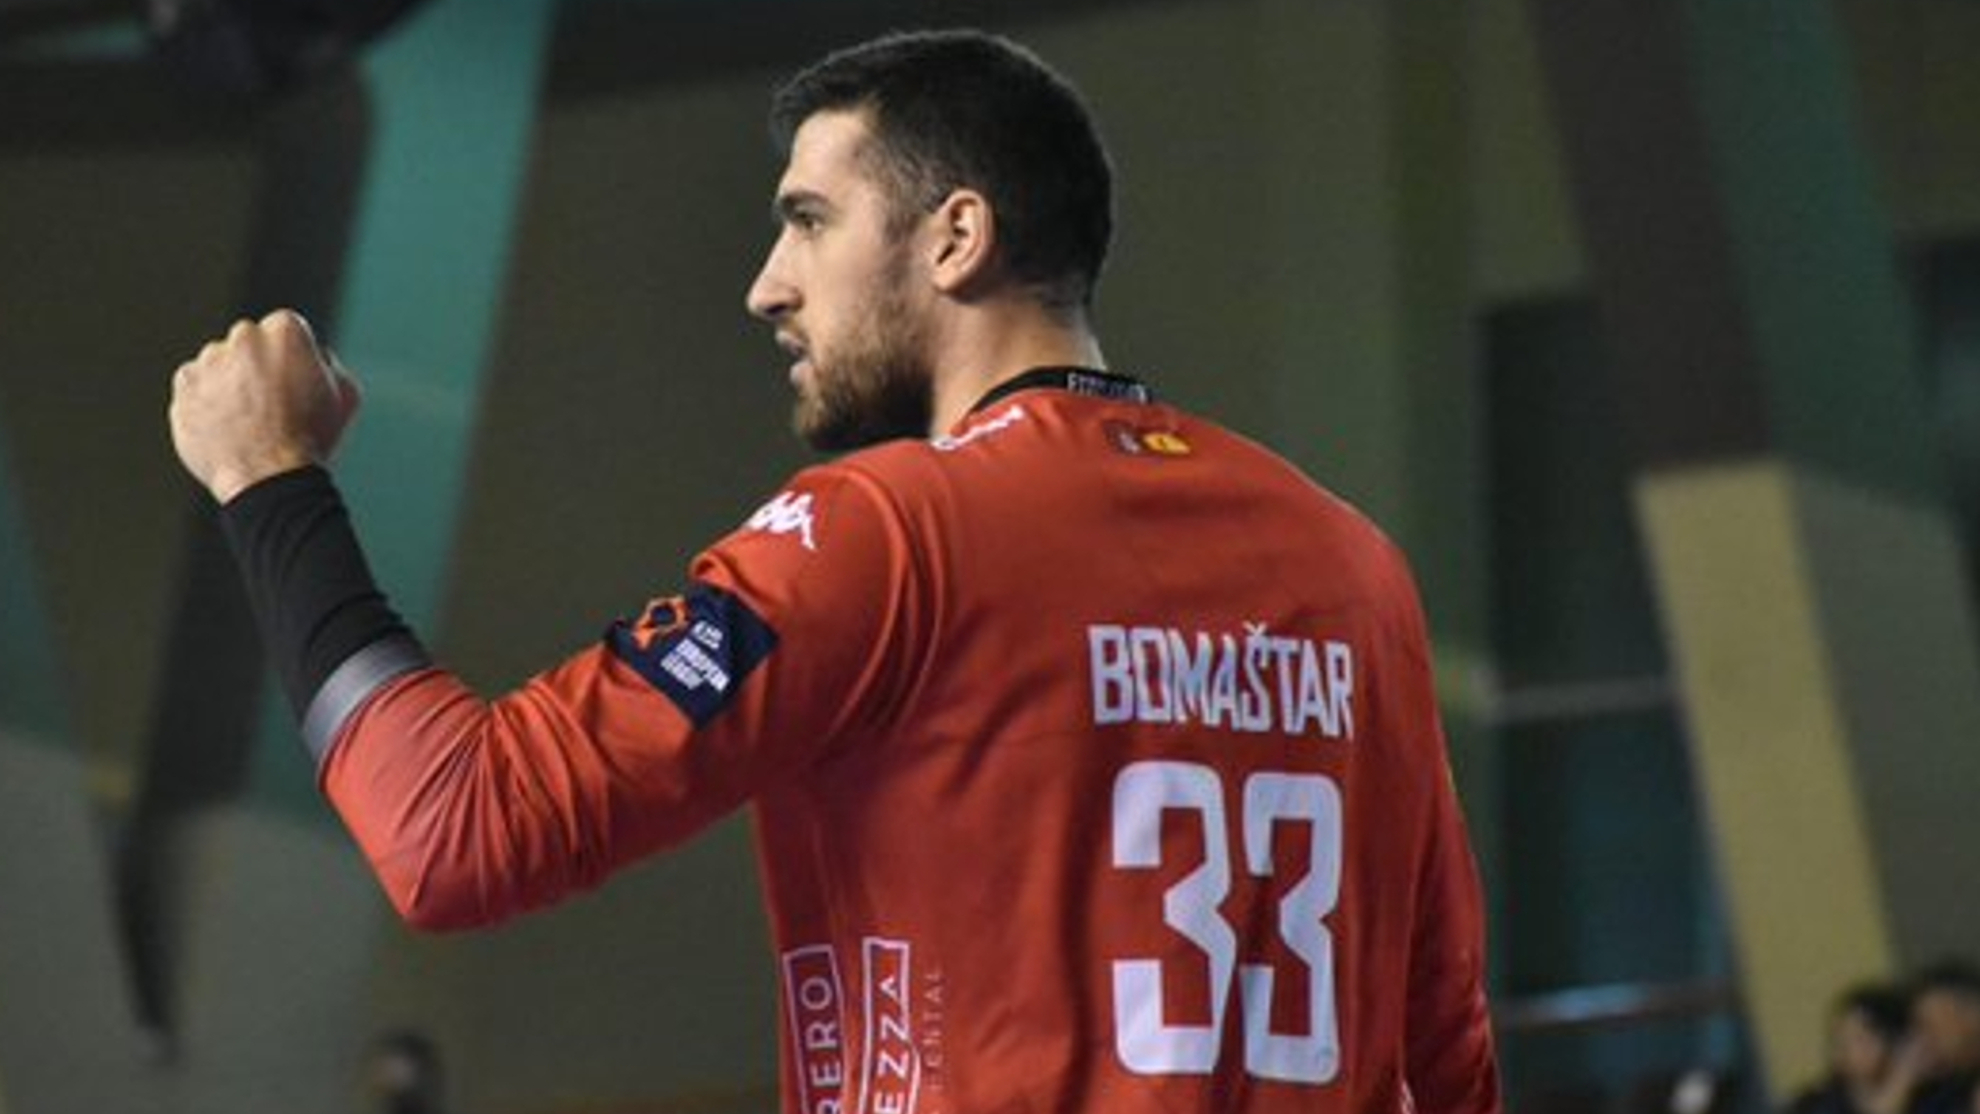 El portero serbio Bomastar, durante un partido con el Ademar / @ADEMARLEON